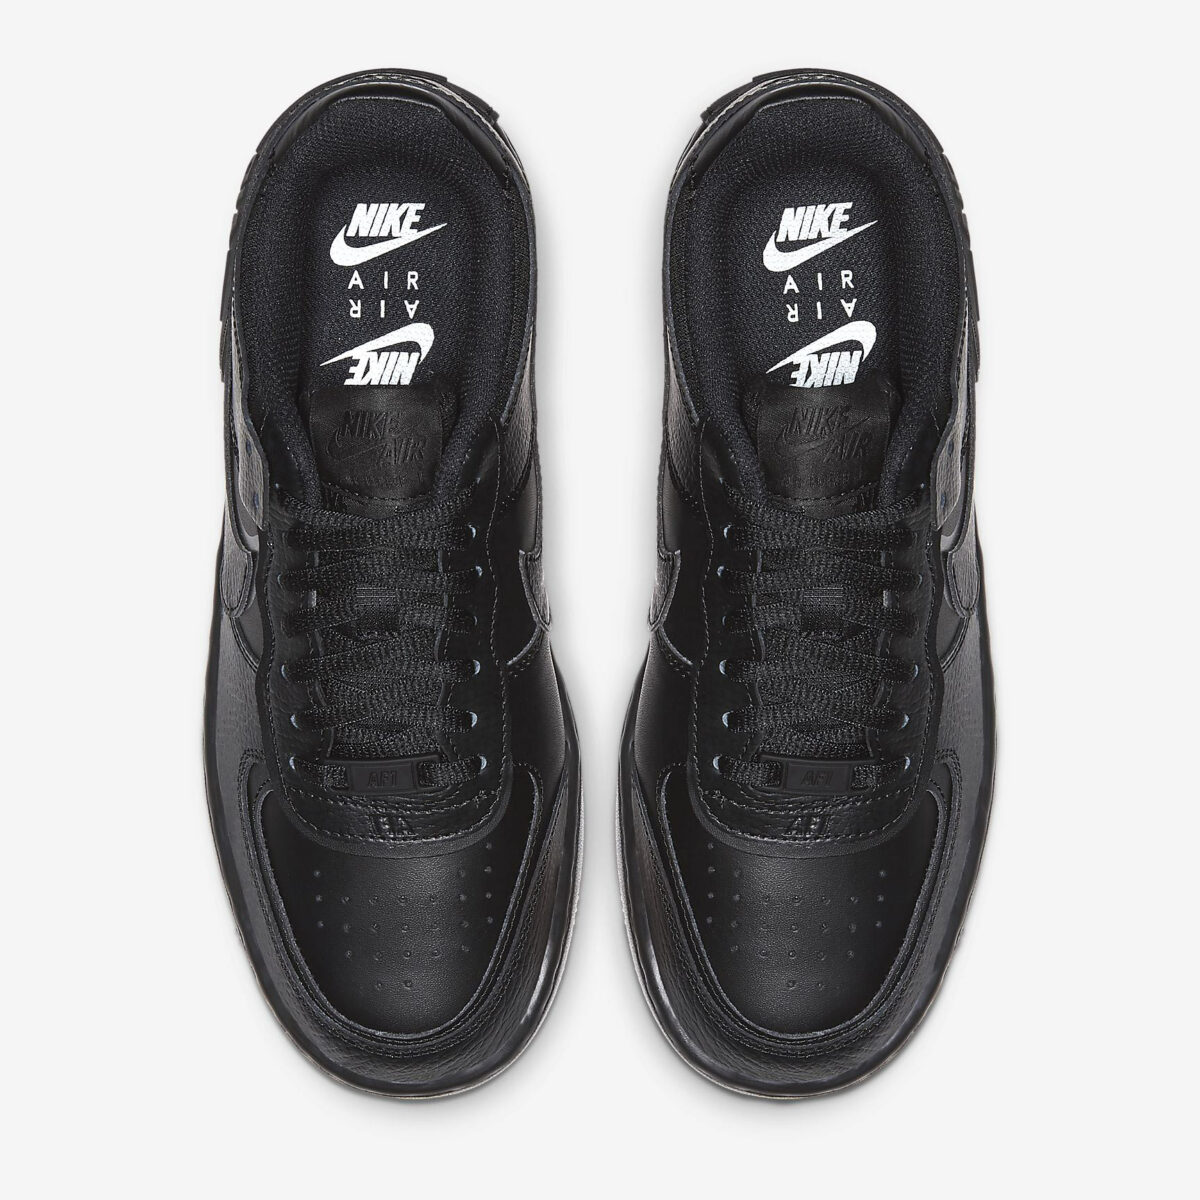 Damen Schuhe Nike Air Force 1 07 Shadow schwarz buy